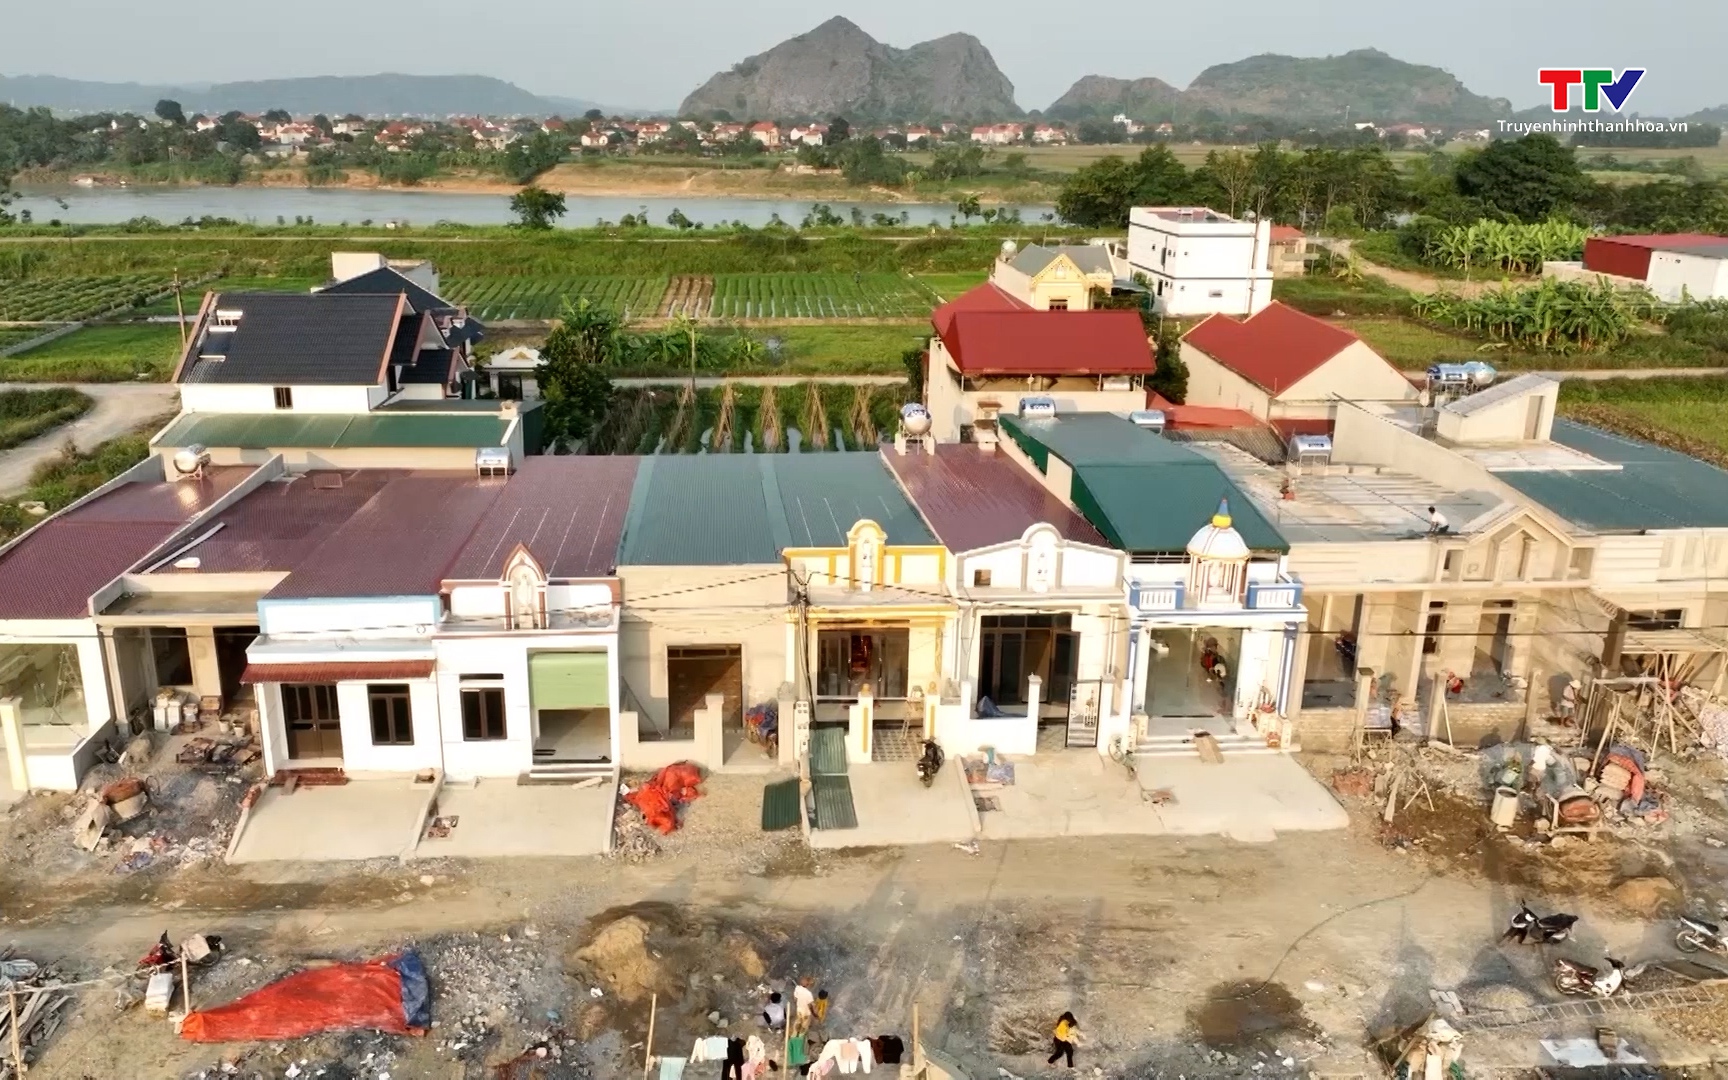 Huyện Yên Định cơ bản hoàn thành việc cấp đất, hỗ trợ làm nhà ở cho các hộ đồng bào trên sông 